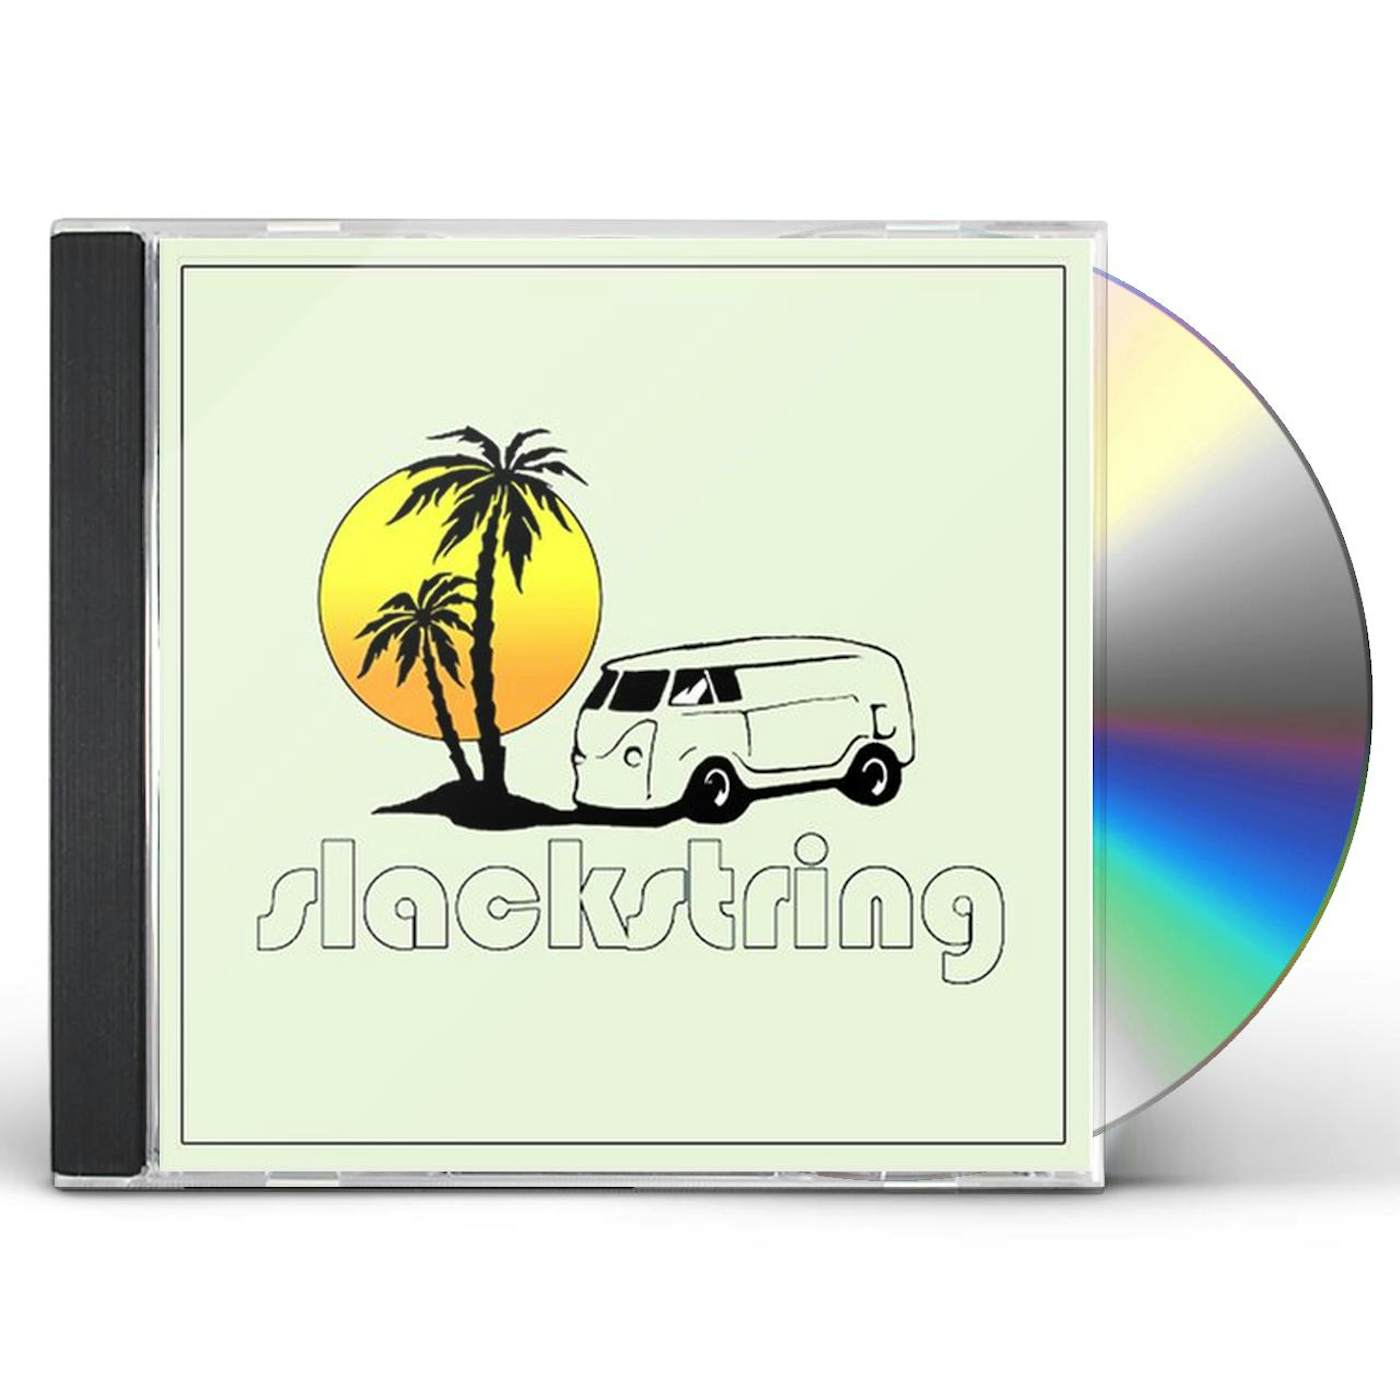 SLACKSTRING CD